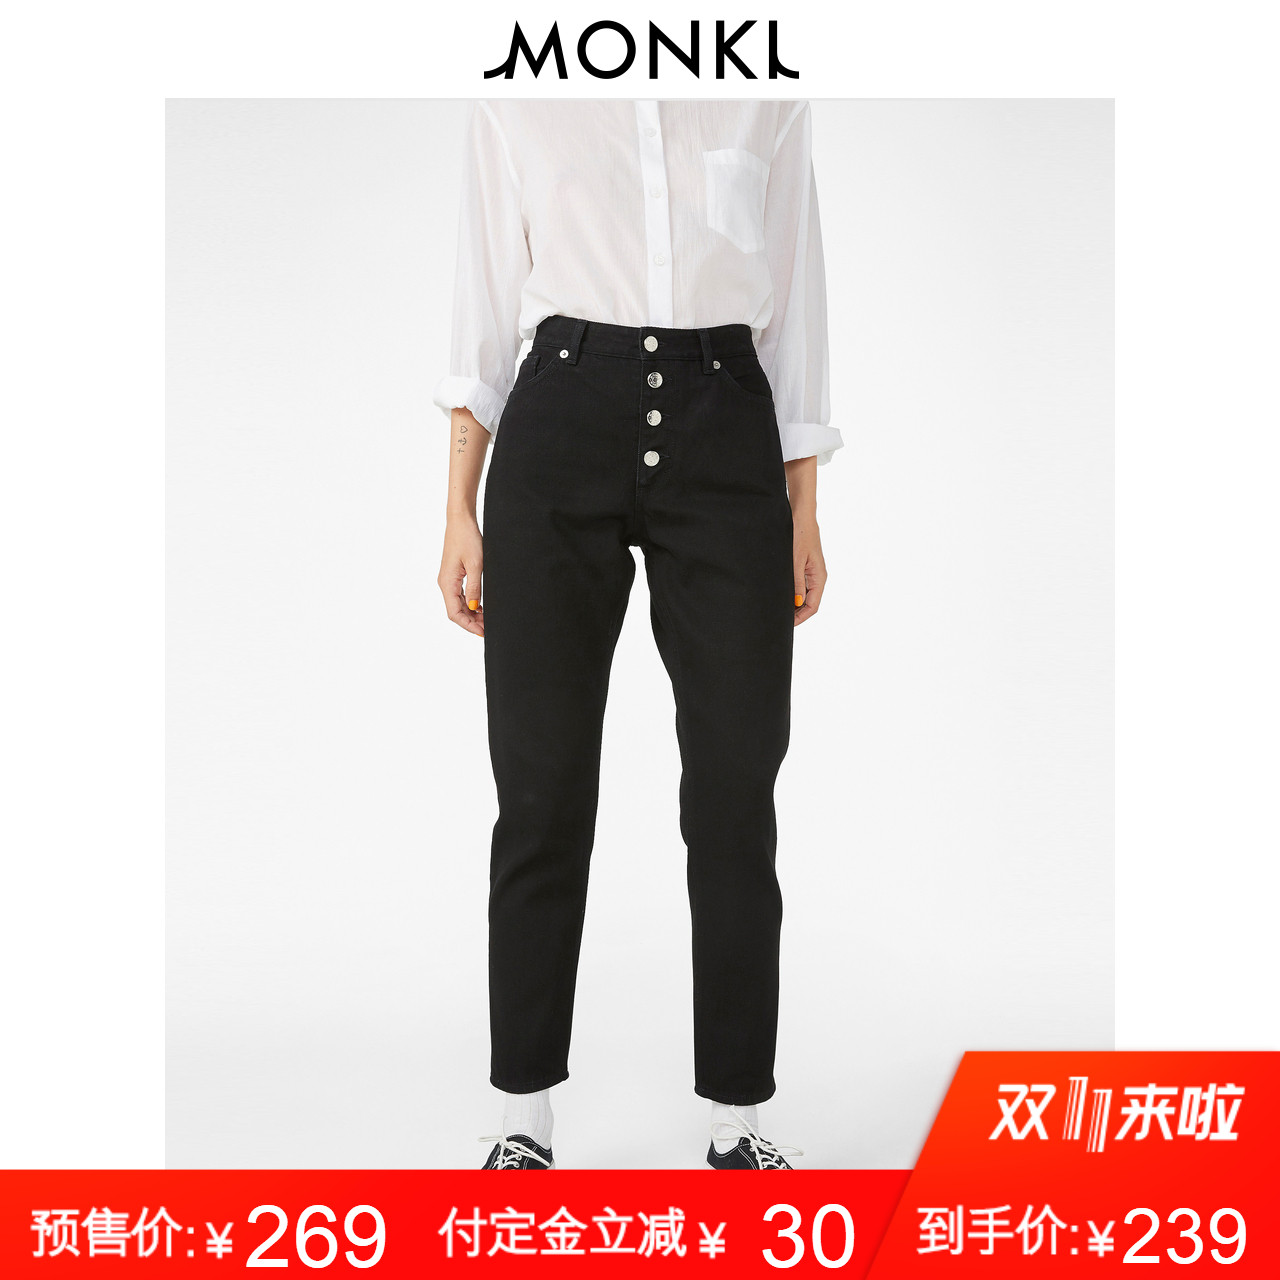 【预售】MONKI2018秋冬新款经典修身显瘦黑色全棉高腰牛仔长裤女